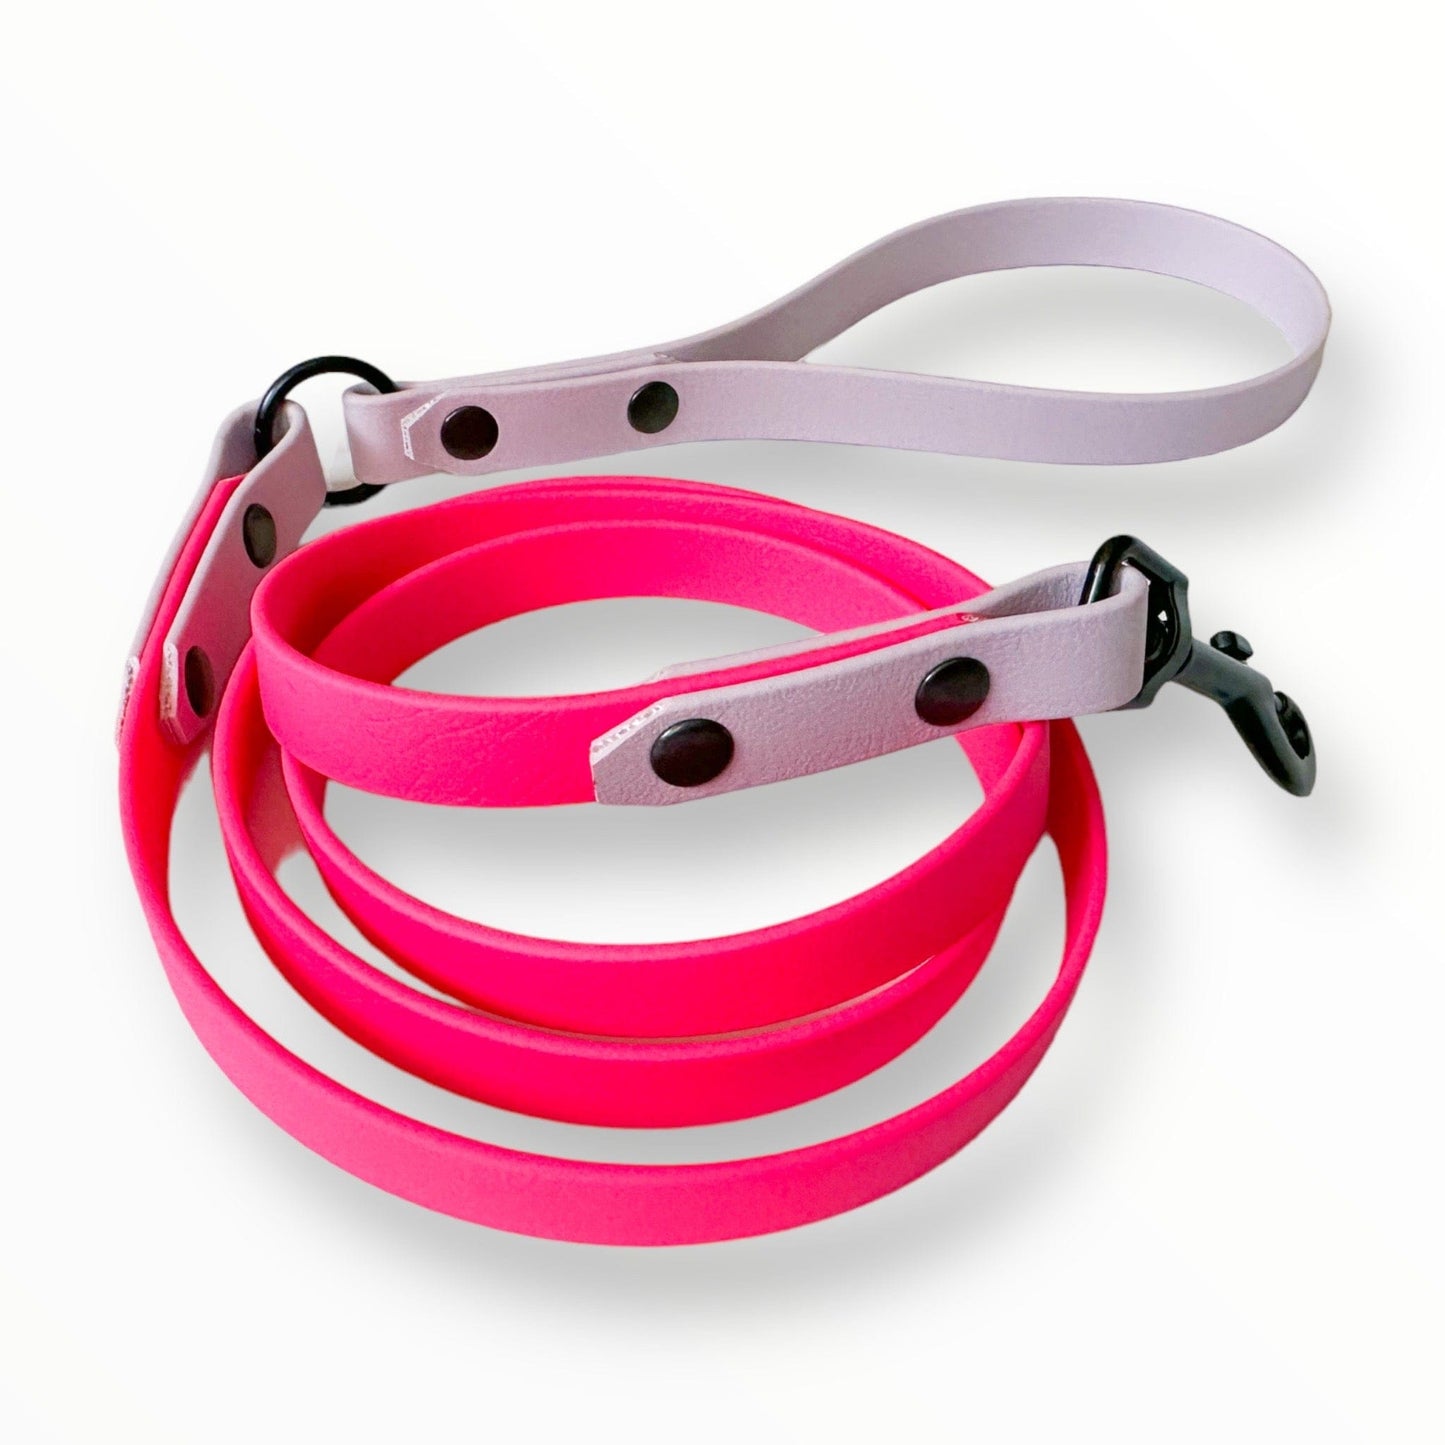 Zelda & Harley Lead Waterproof Leash - Neon Pink and Purple